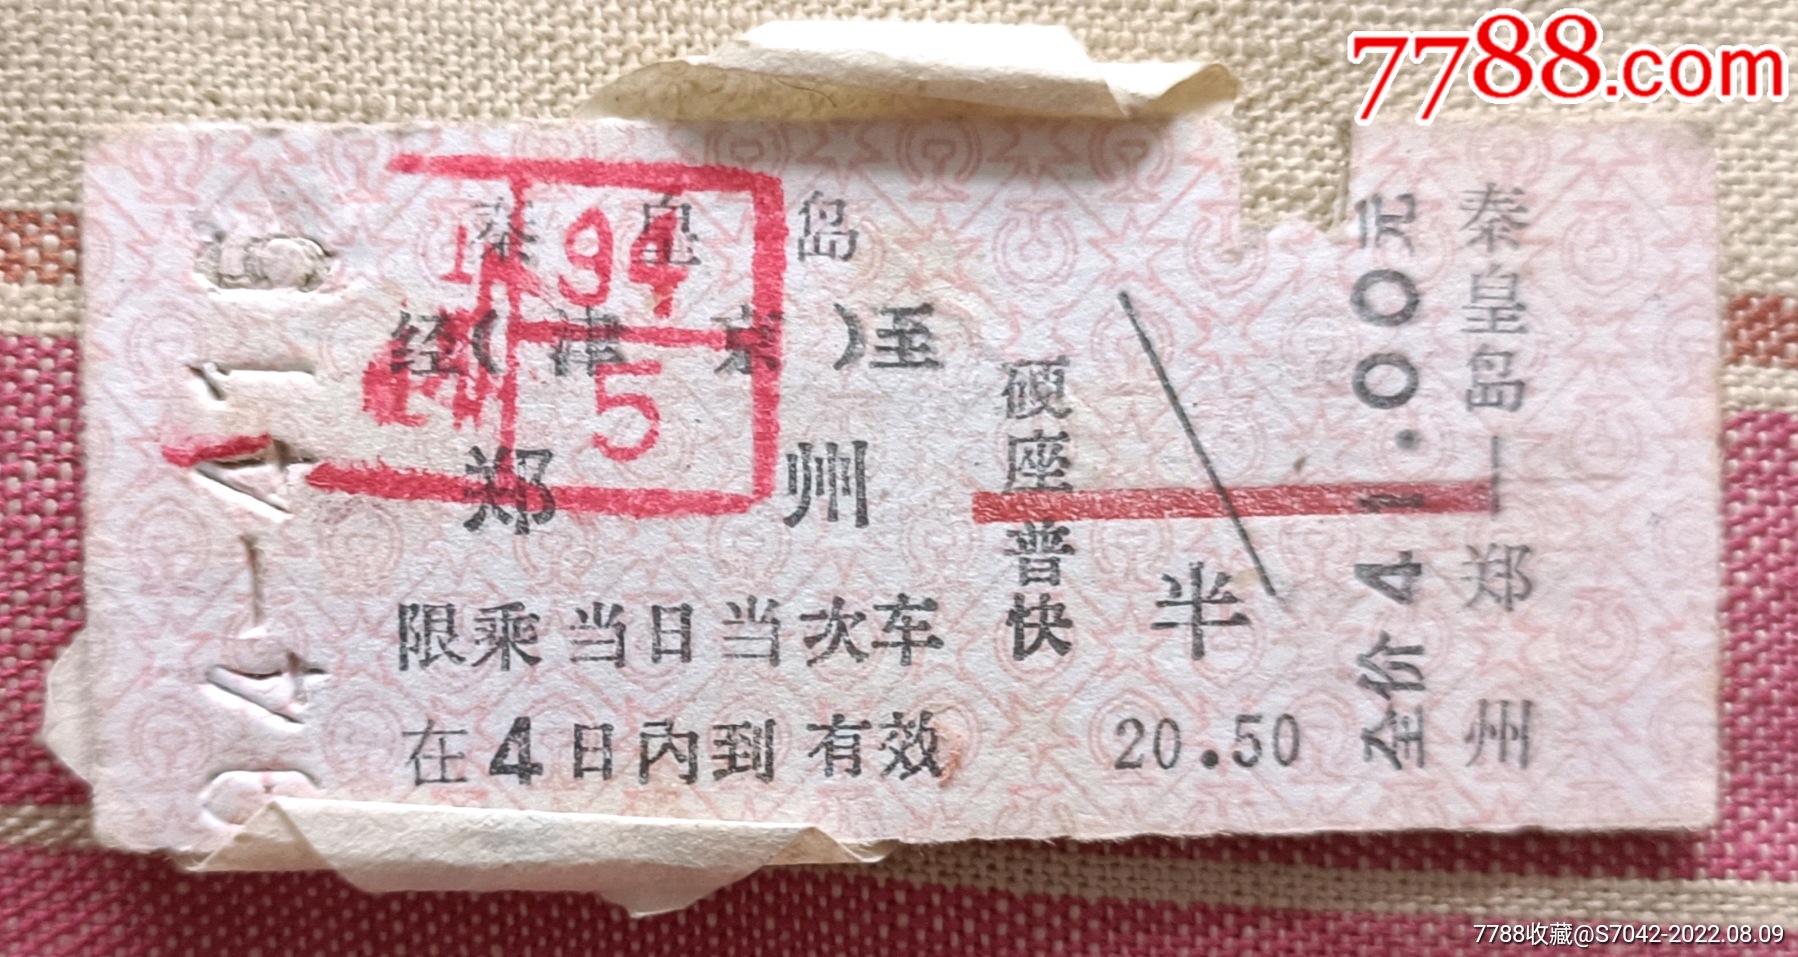 02年火车票郑州东一信阳东-火车票-7788收藏